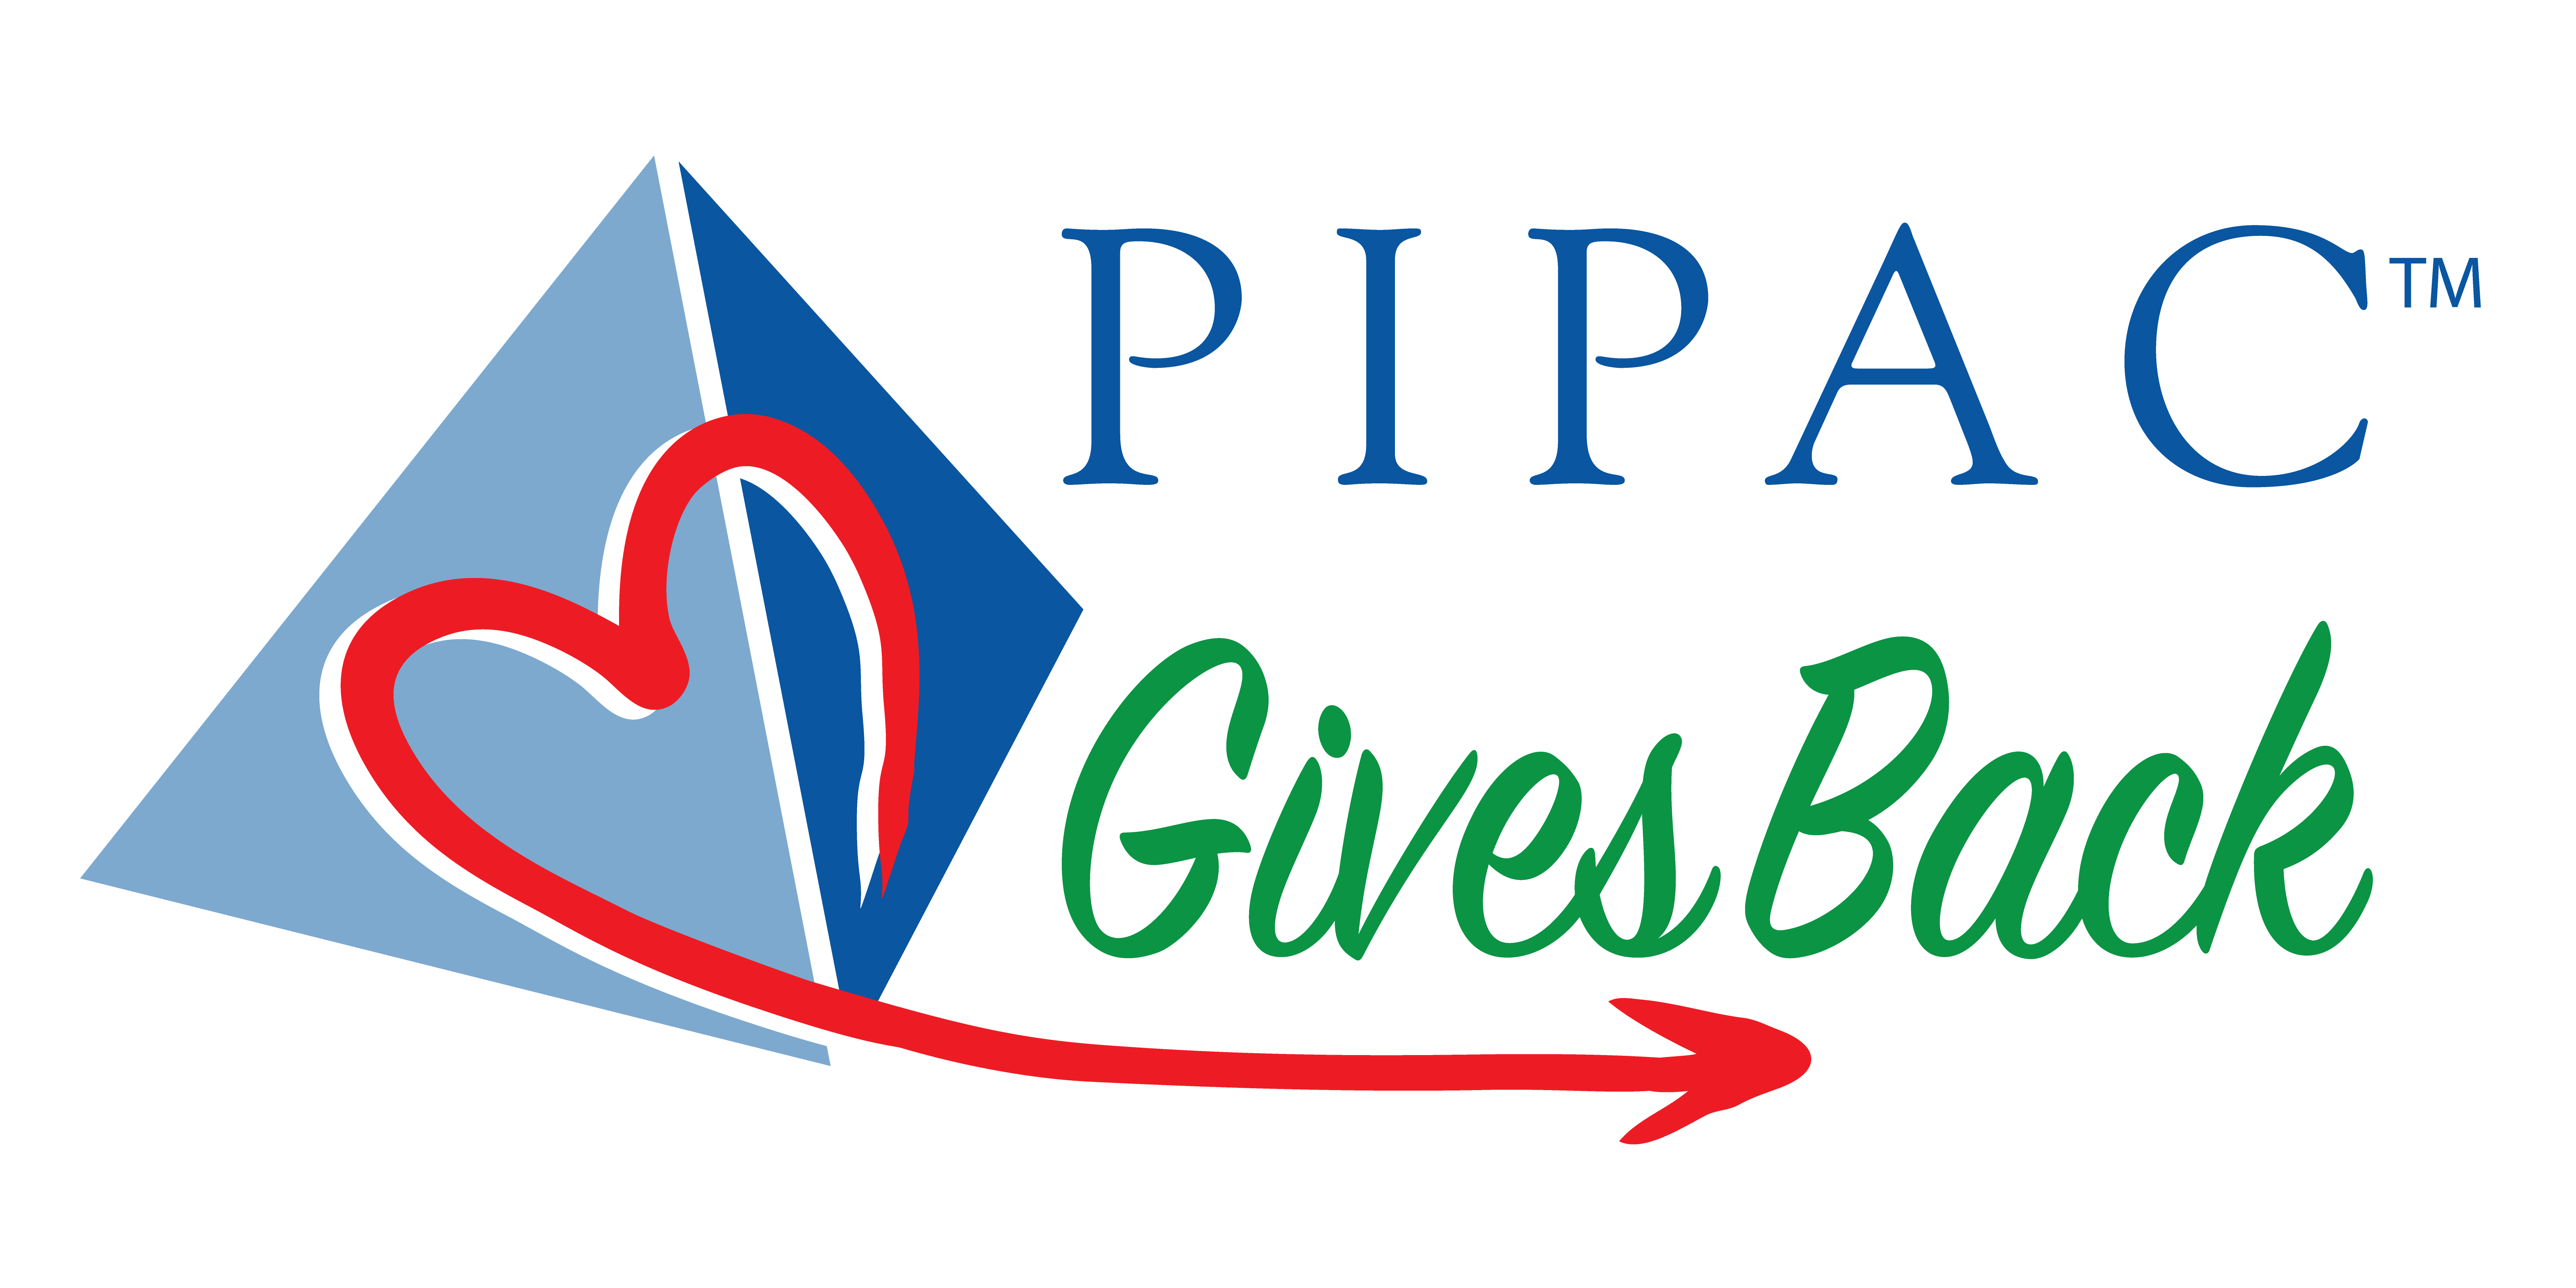 PIPAC Gives Back Logo